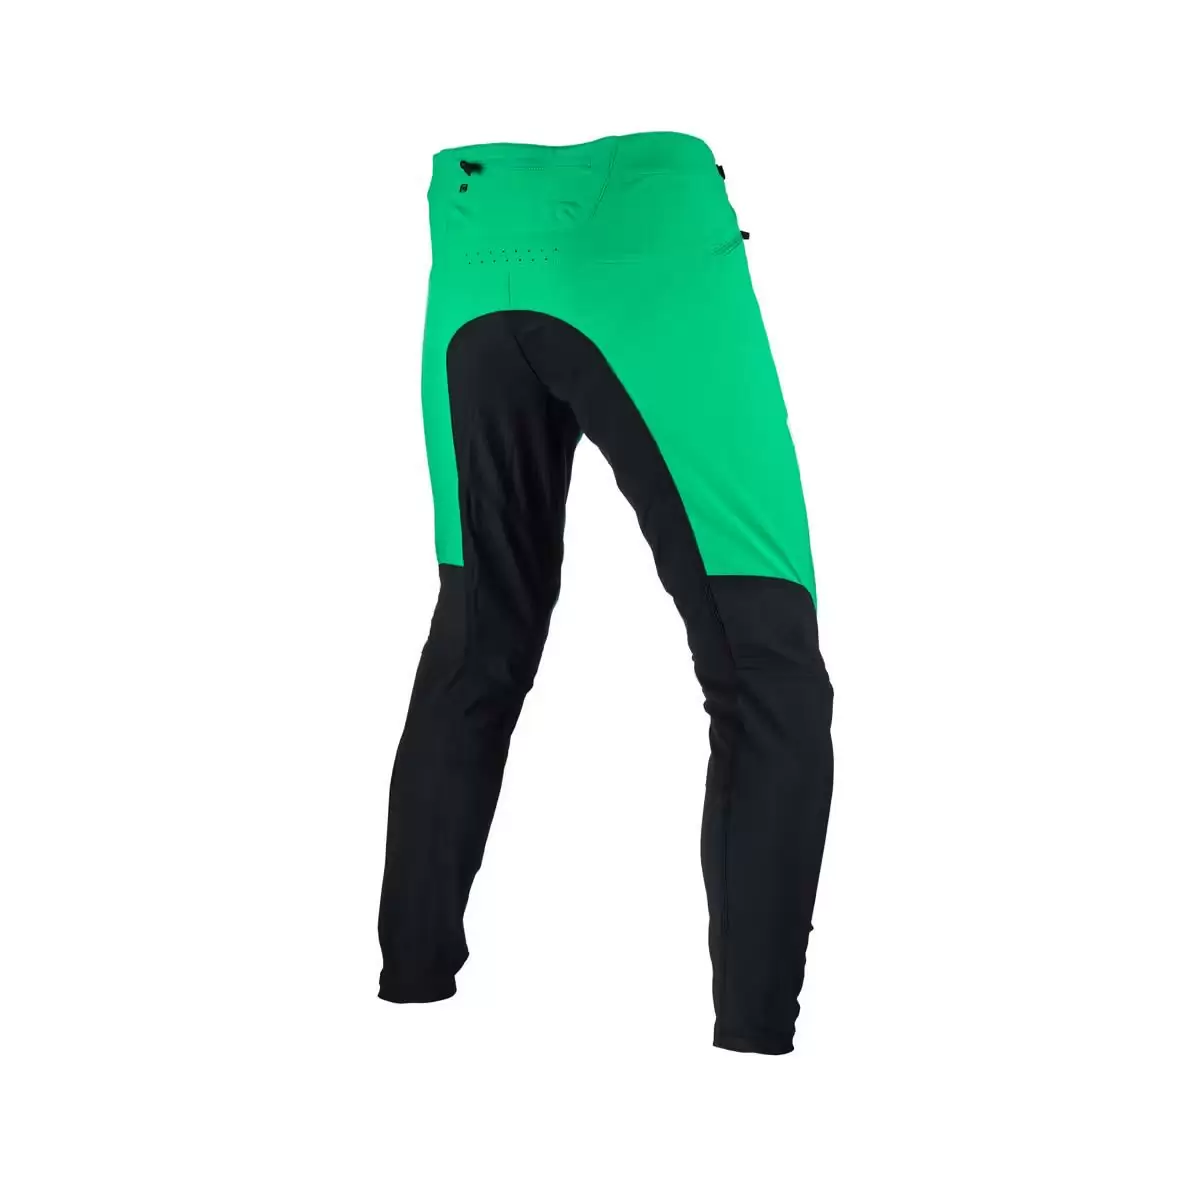 Gravity 4.0 MTB Long Pants Black/Green Size XS #1